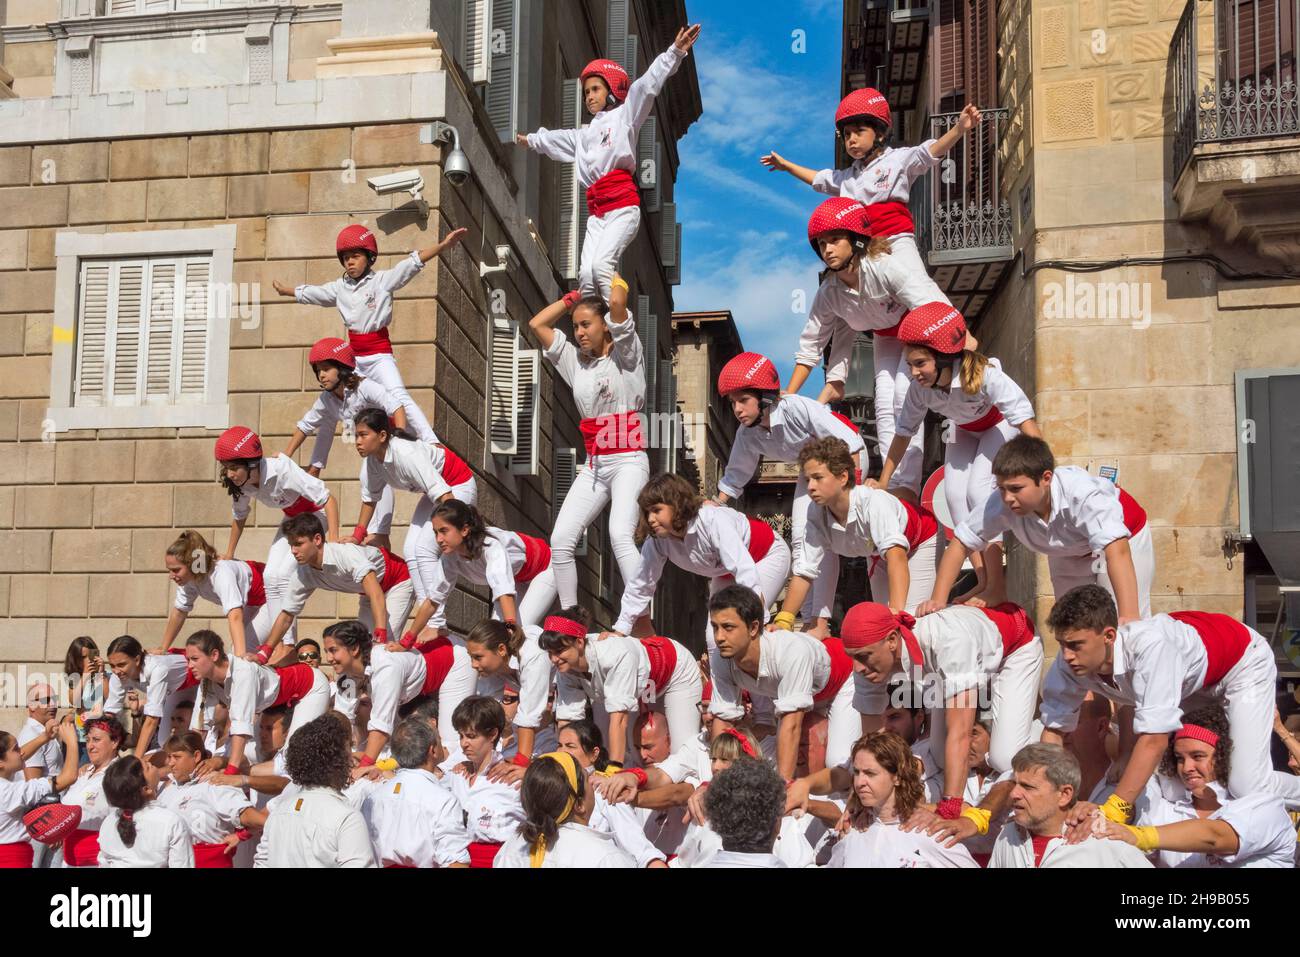 Spettacolo dei Castellers (torre umana) in occasione della festa di la Merce, Barcellona, Provincia di Barcellona, Comunità autonoma della Catalogna, Spagna Foto Stock